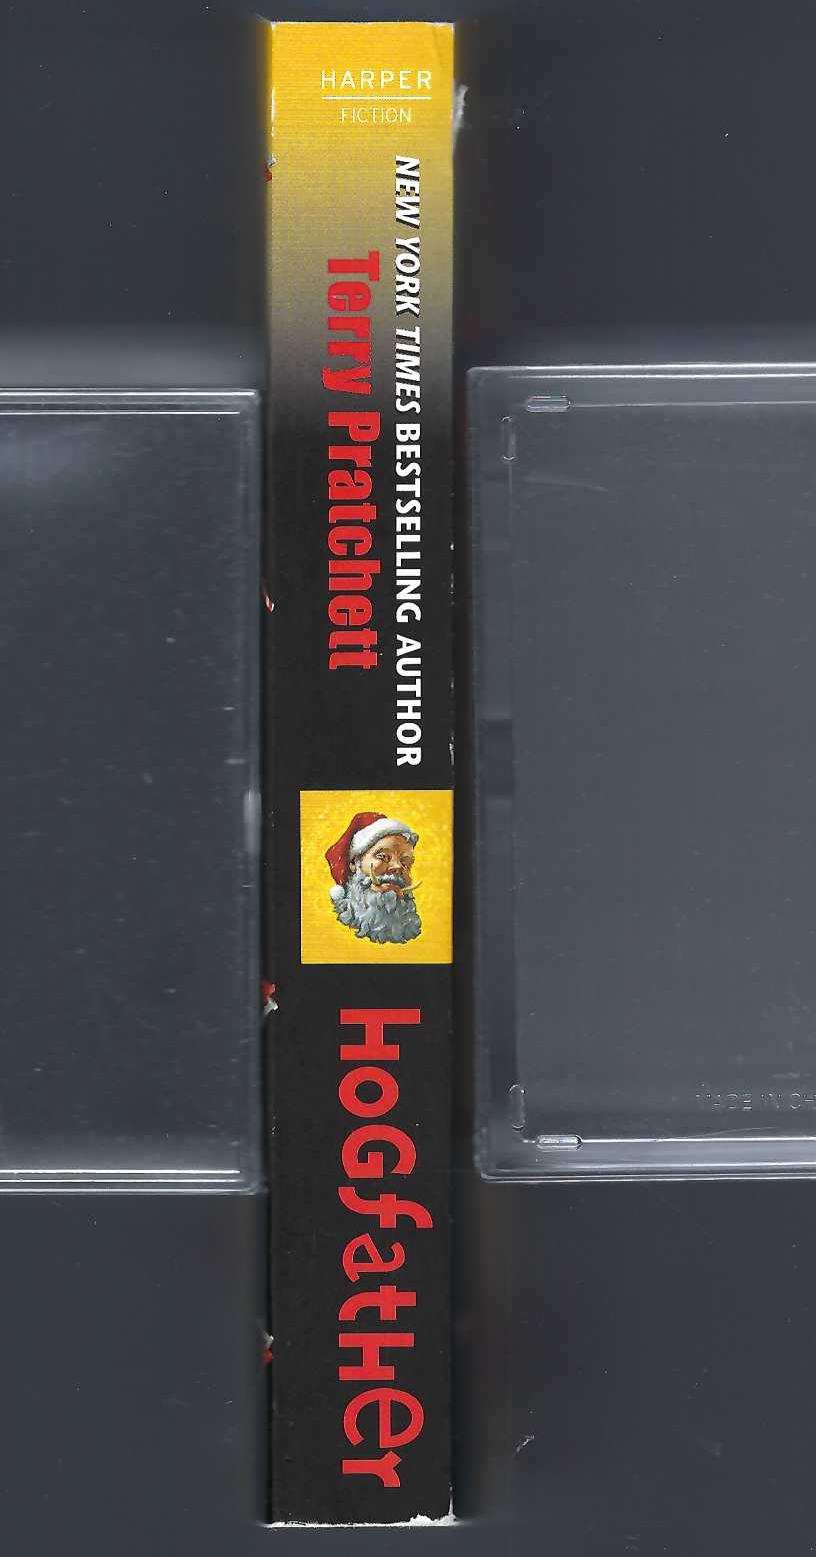 Hogfather, by Terry Pratchett spine